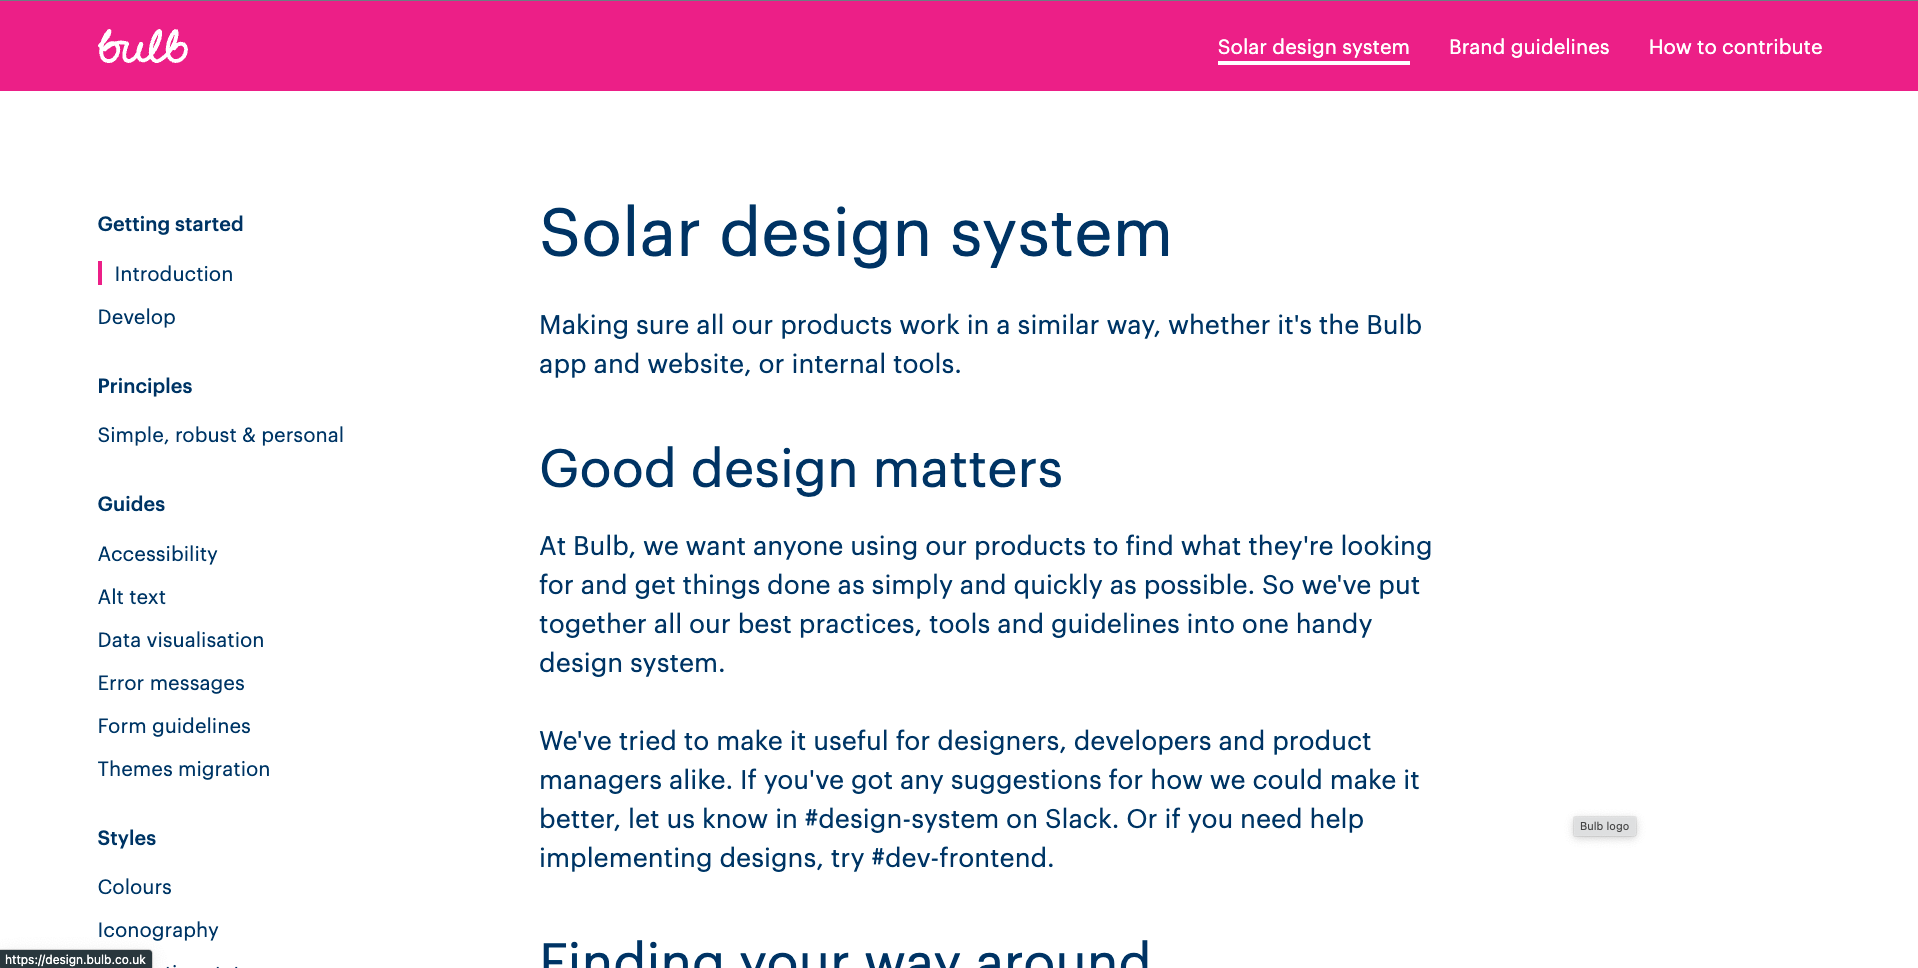 https://design.bulb.co.uk/